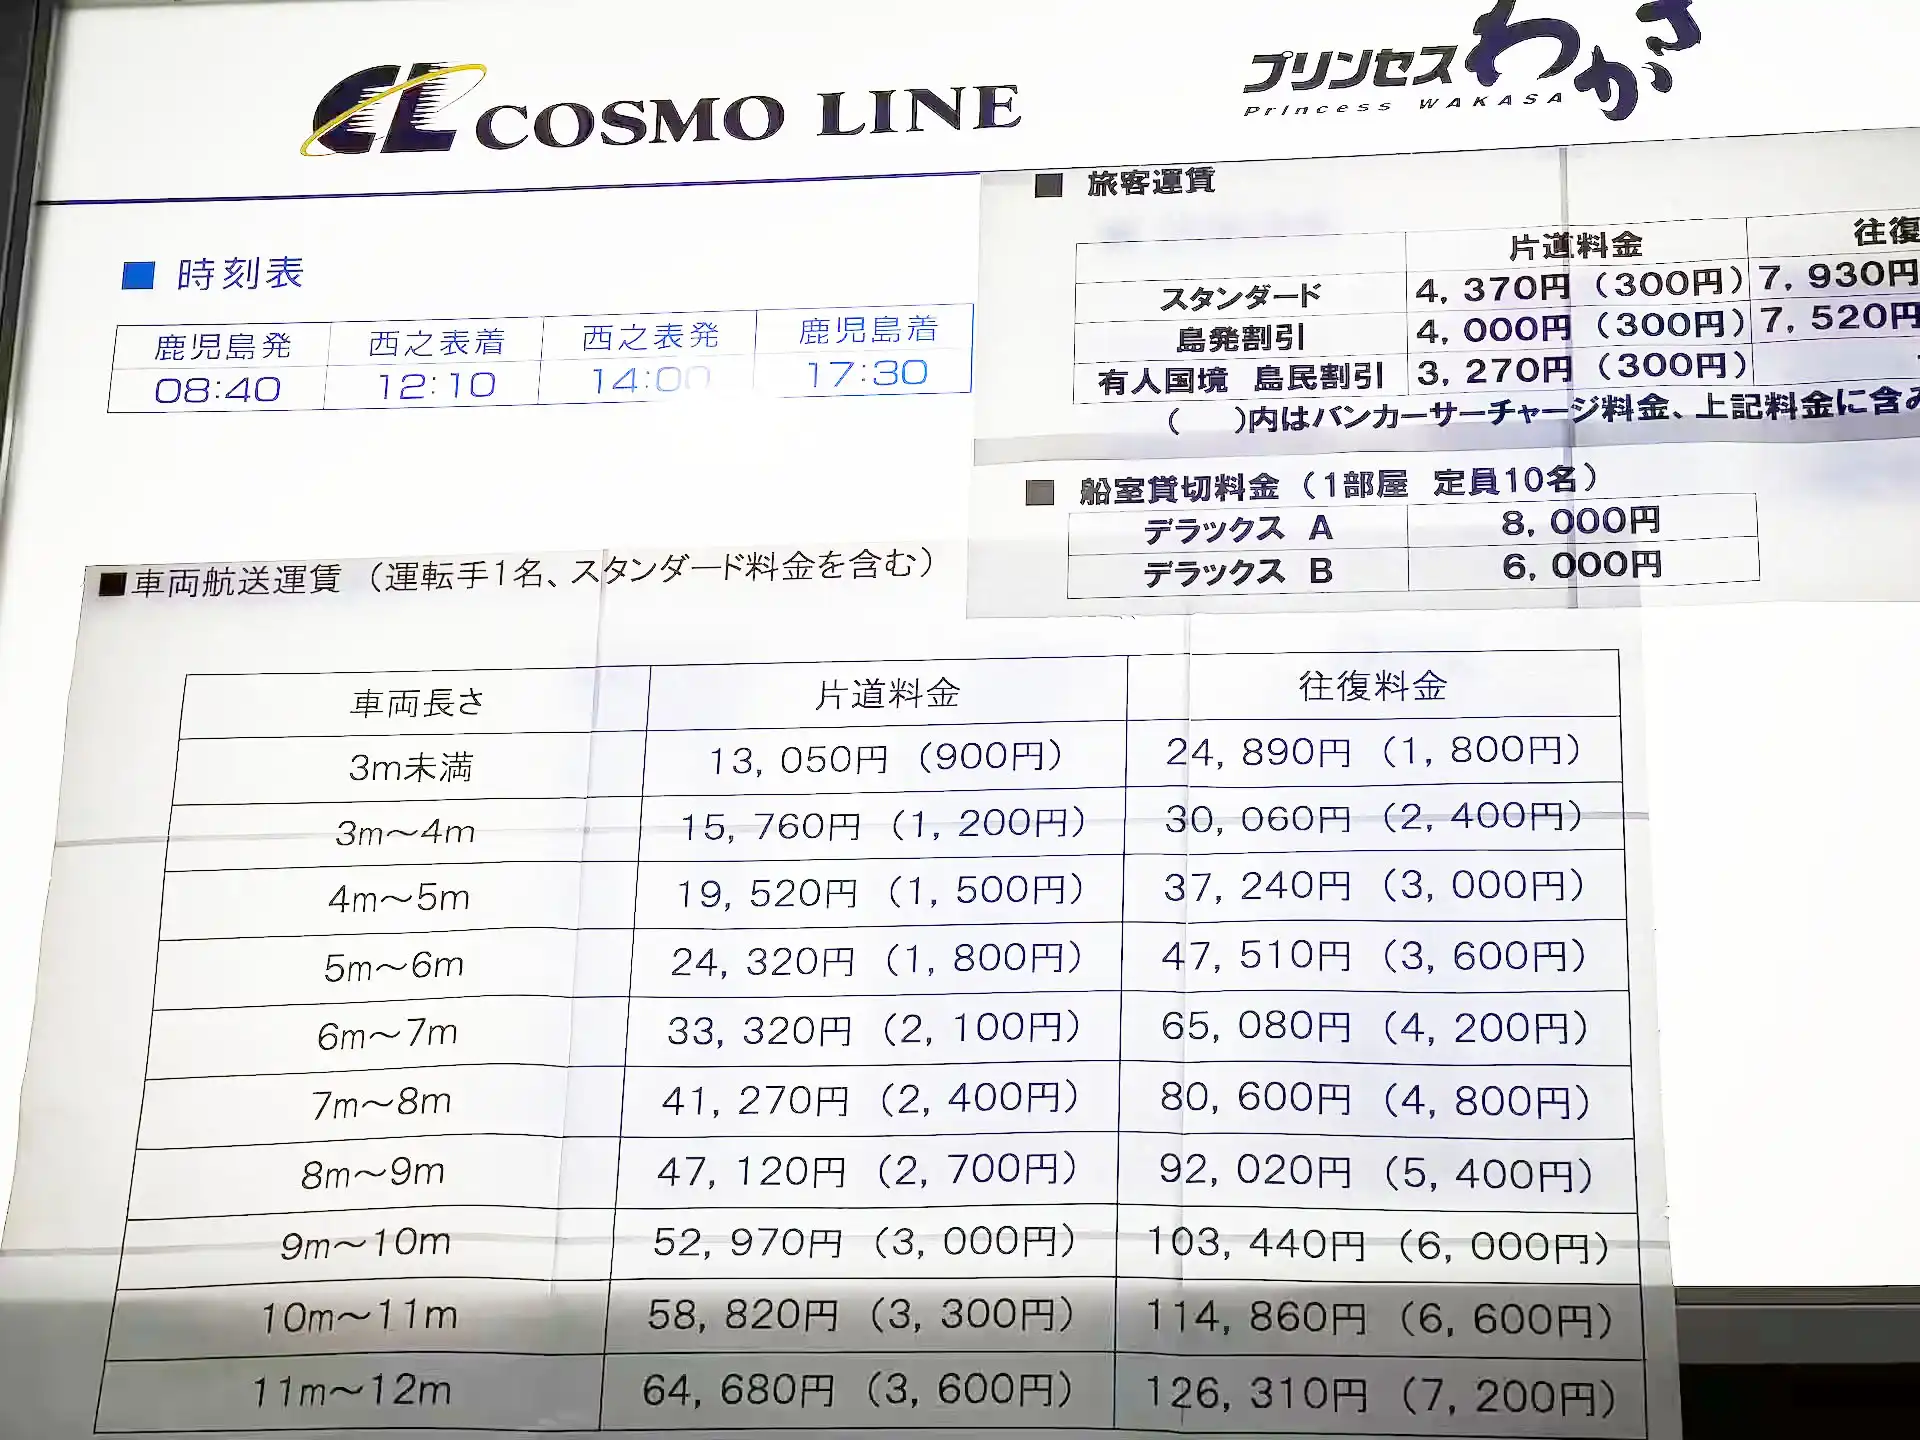 鹿児島県の南埠頭旅客ターミナルにあるコスモラインのプリンセスわかさの乗船料金が書かれた表